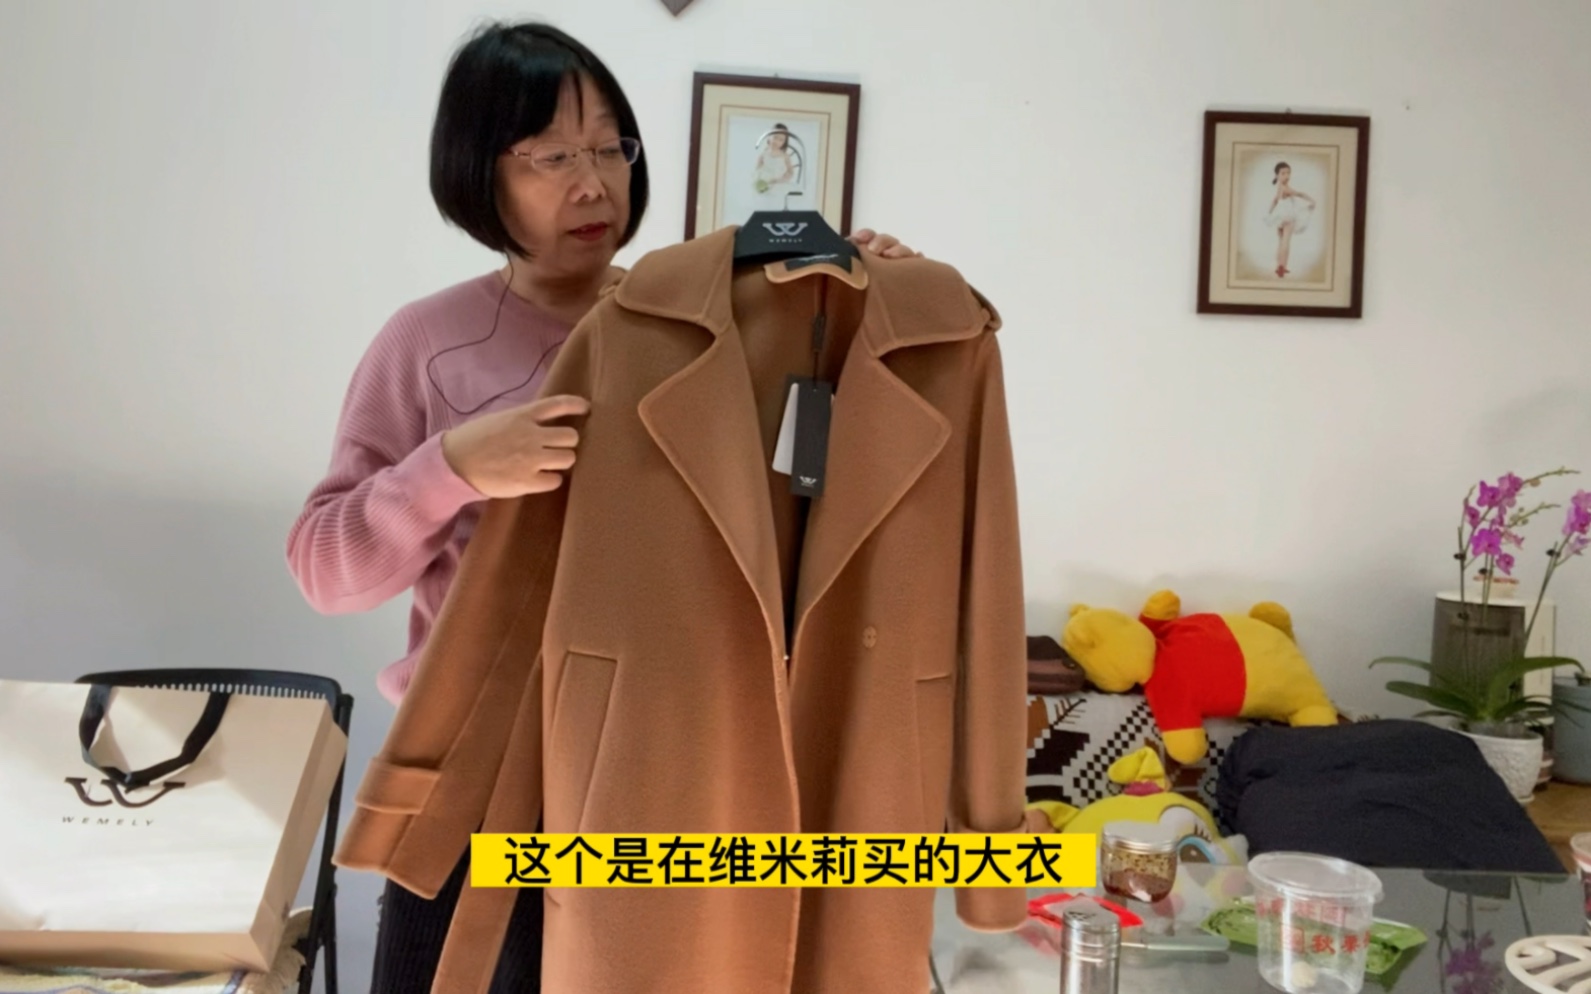 北京退休大姐买了一件大衣四件羊绒衫，款式新颖价格适中